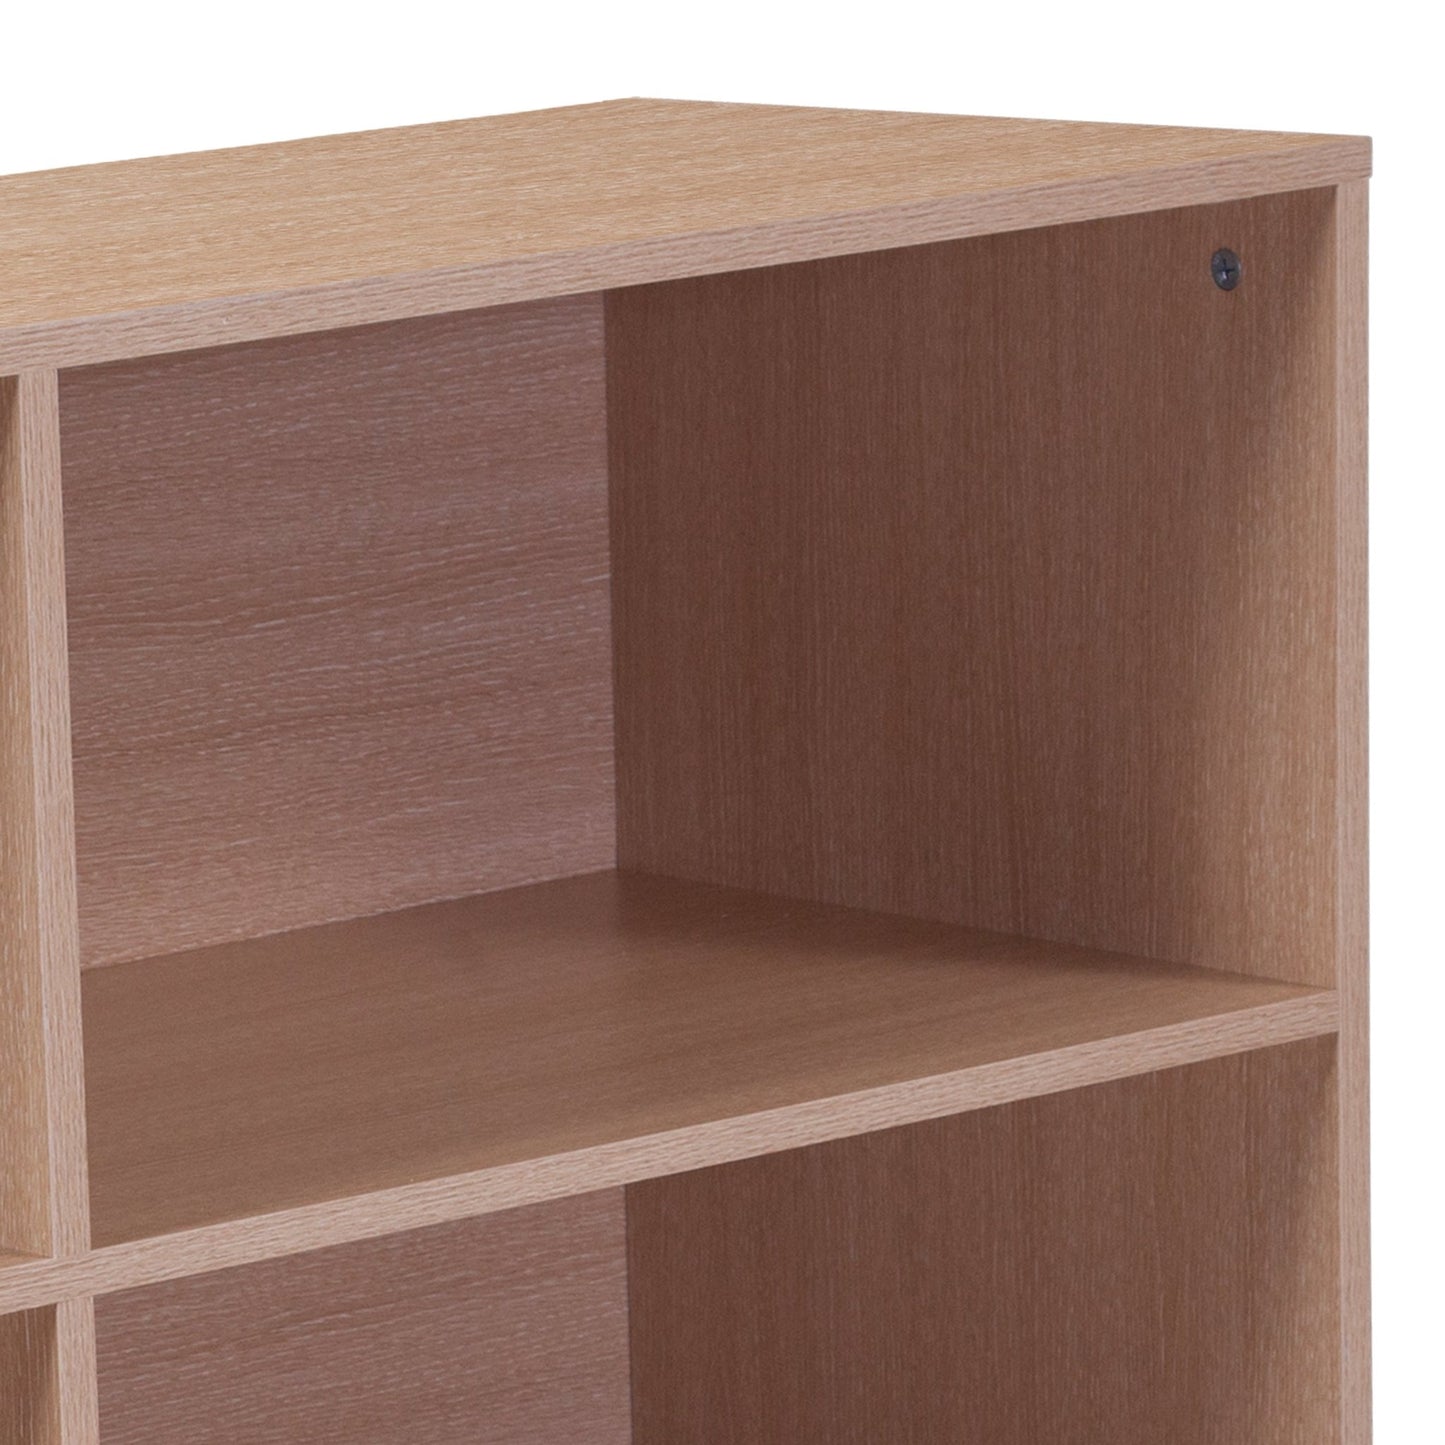 Dudley 4 Shelf 29.5"H Open Bookcase Storage in Oak Wood Grain Finish - SchoolOutlet